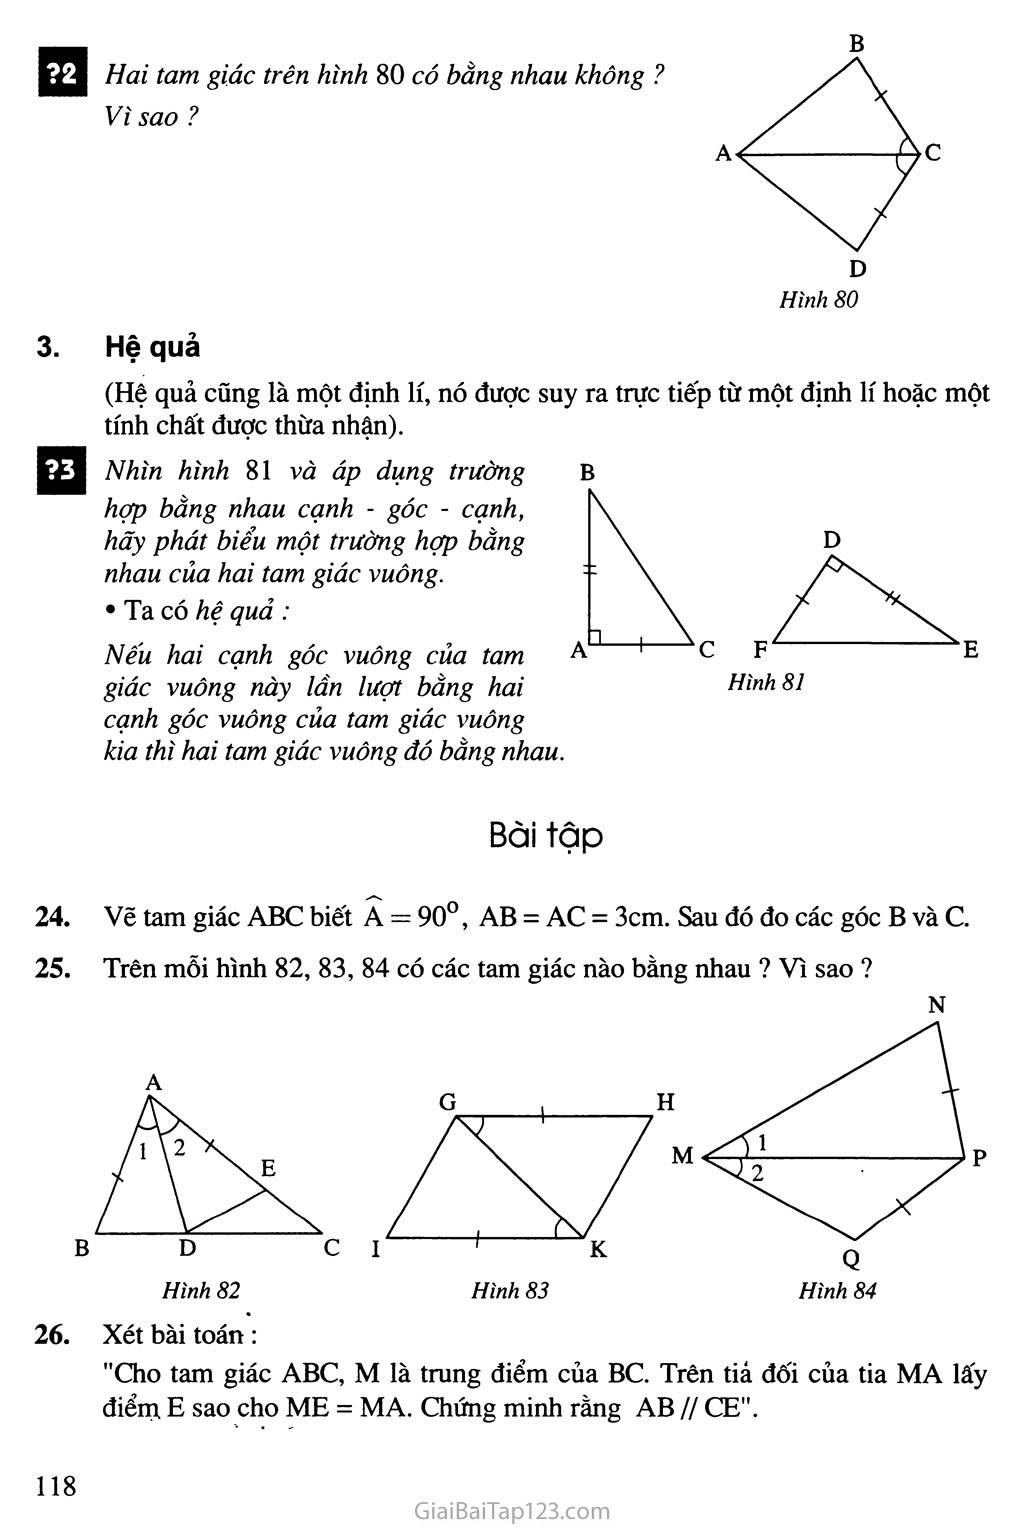 Bài 4. Trường hợp bằng nhau thứ hai của tam giác: cạnh - góc - cạnh (c. g. c) trang 2